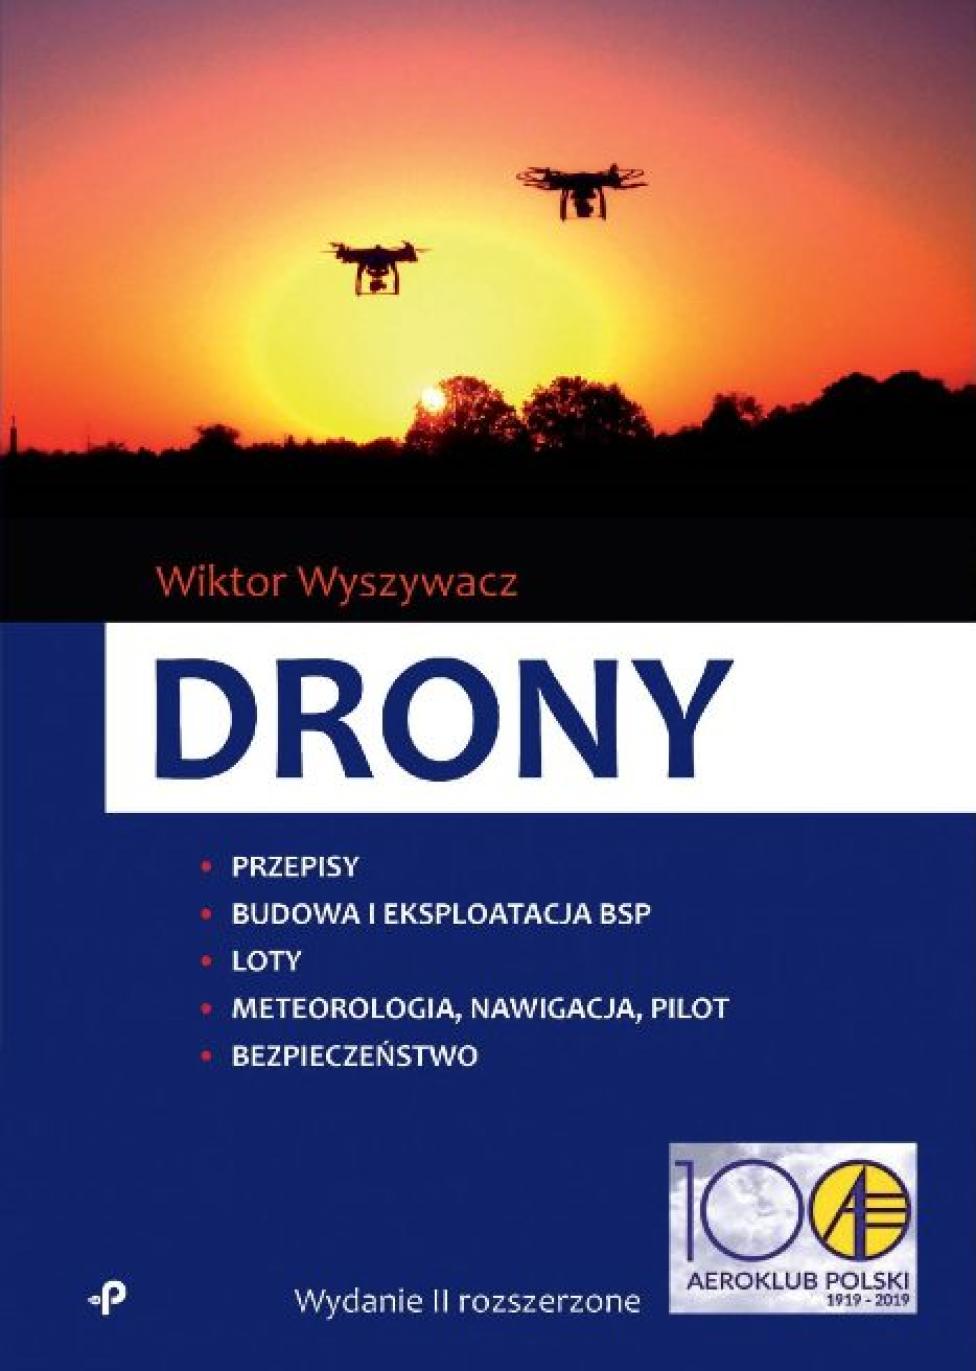 Książka "Drony" – kompendium wiedzy o bezzałogowych statkach powietrznych (fot. aeroklub-polski.pl)